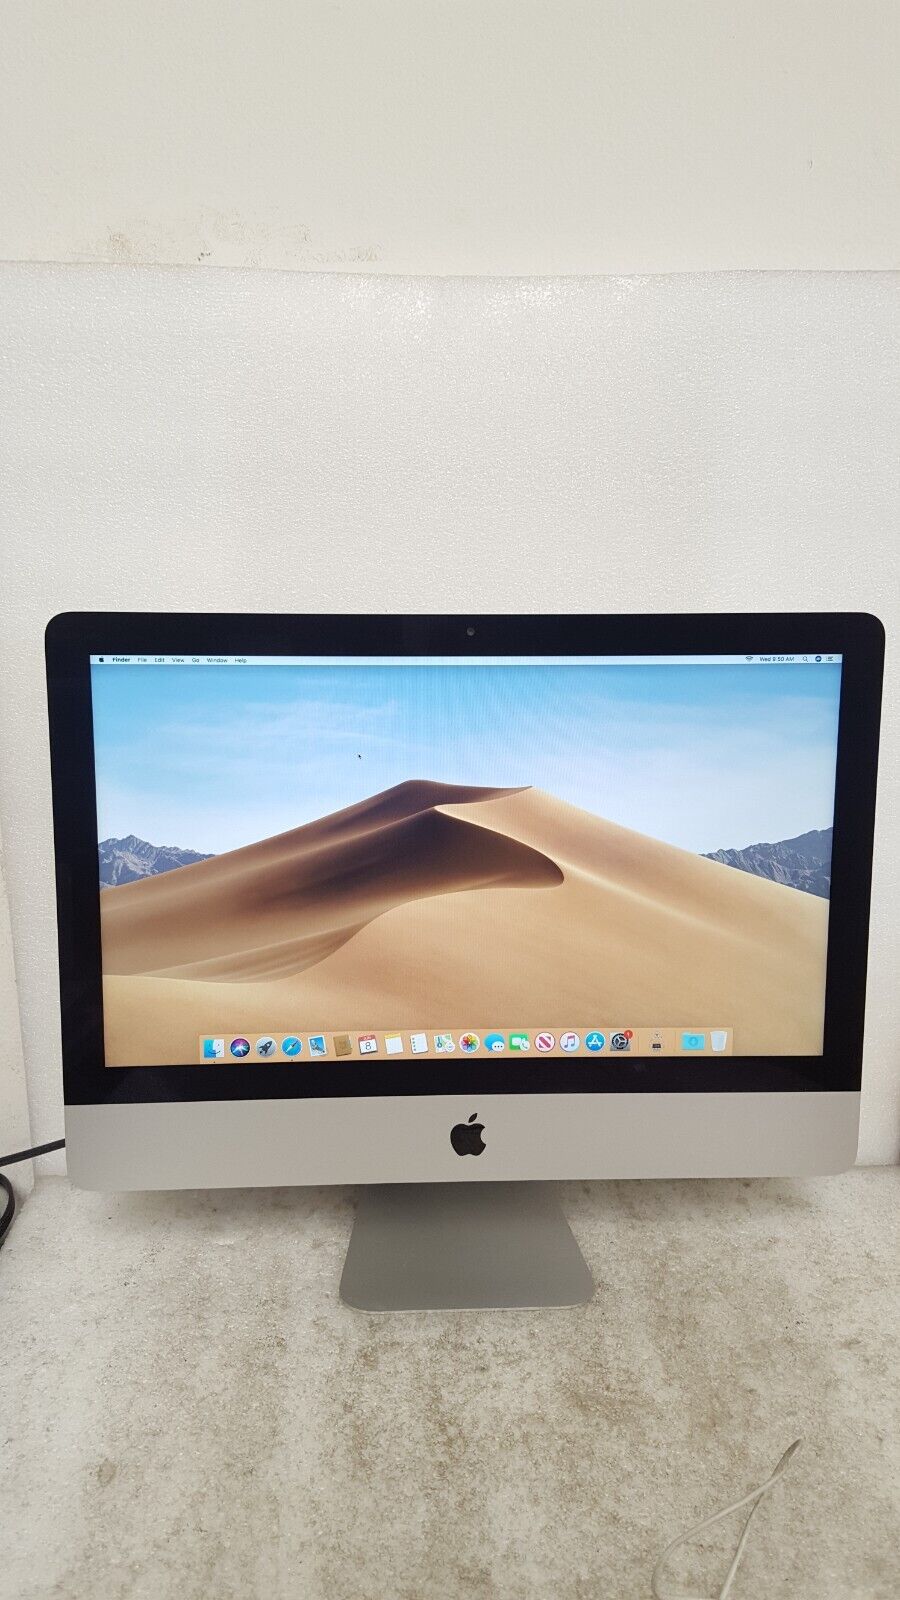 Apple 21.5 iMac Desktop Computer, Intel Core i5-7360U, 8GB RAM Memory, 1TB  HDD Hard-Drive, Mac OSX Operating System, MMQA2LL/A (Renewed)